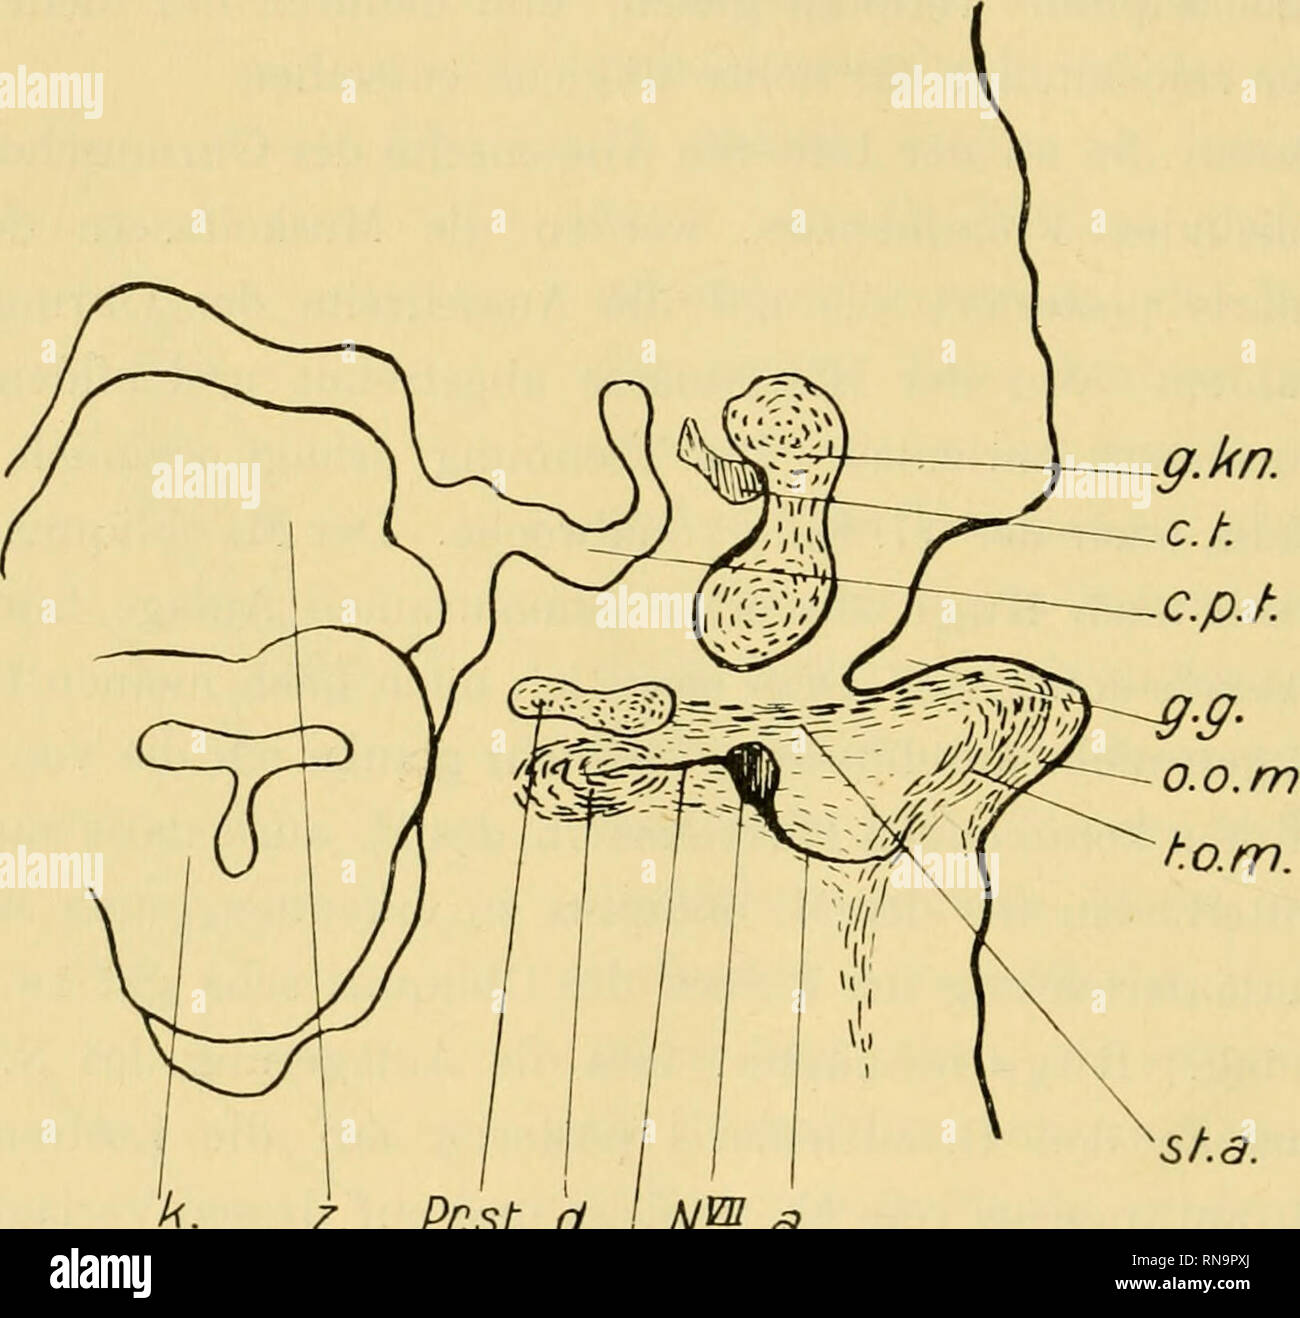 . Anatomische Hefte. 482 R. FUTAMURA, M. transversns auriculae oder mit dem Ende des M. auricularis posterior ist nicht vorhanden. Der obere hintere Teil des M. antitragicus verläuft beim Embryo von der 17. Woche durch die mediale Seite des M. auricularis posterior und superior hindurch,. d. I NP a. N.St. Fig. 15. Menschlicher Embryo von 6 Wochen. Frontalschnitt durch die Abgangsstelle desM. stylo-auricularis. 37fach vergrössert. g.kn. Gehörknöchelchen, ct. Chorda tympani. c. p.t. Canalis pharyngo-tympanicus. g. g. Gehörgrube, o. o. m. Myo- genesgewebe für die Ohrmuschelmuskulatur (aus oberflä Stock Photo